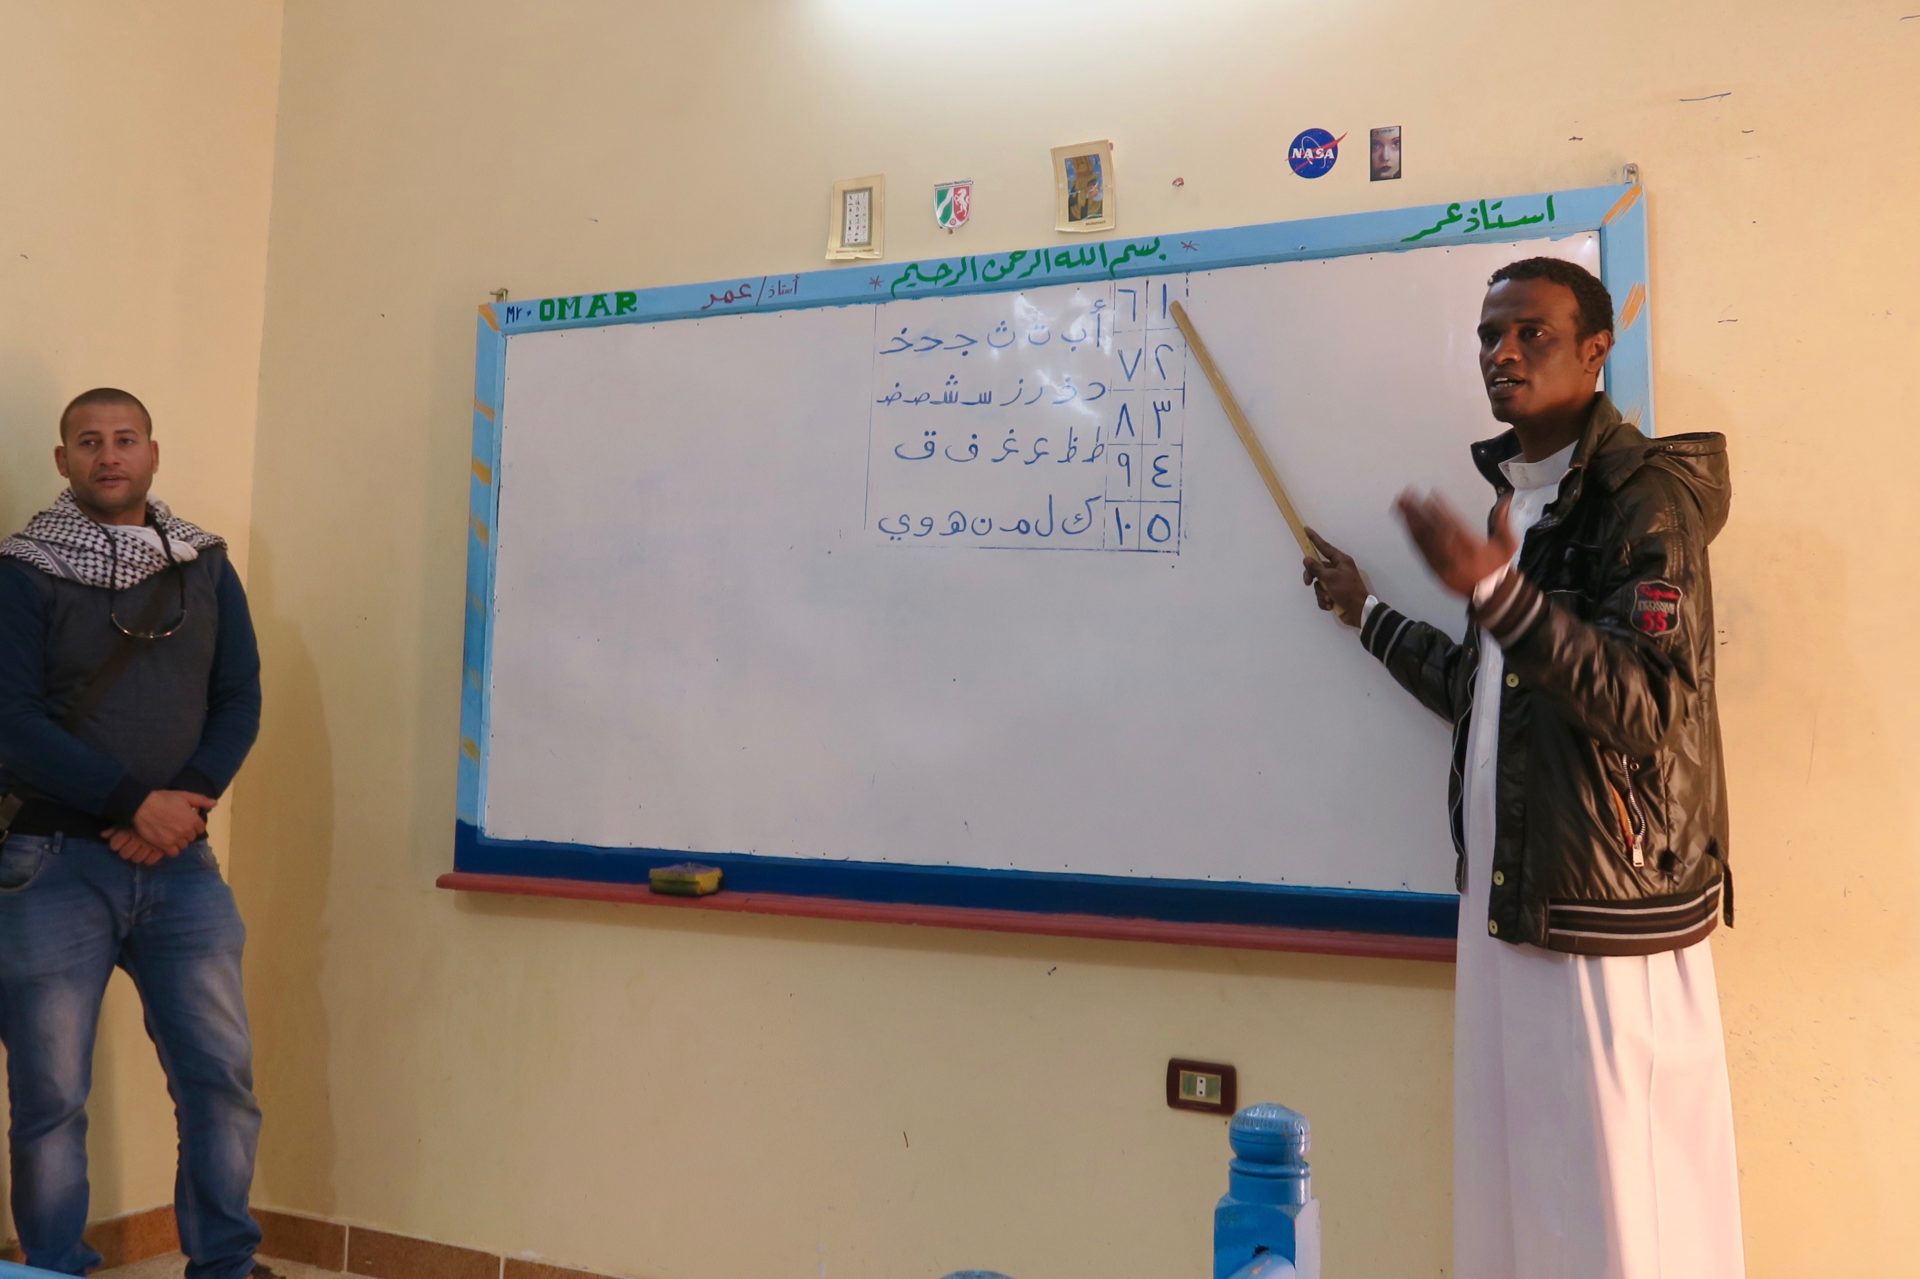 Schoolroom in Nubia